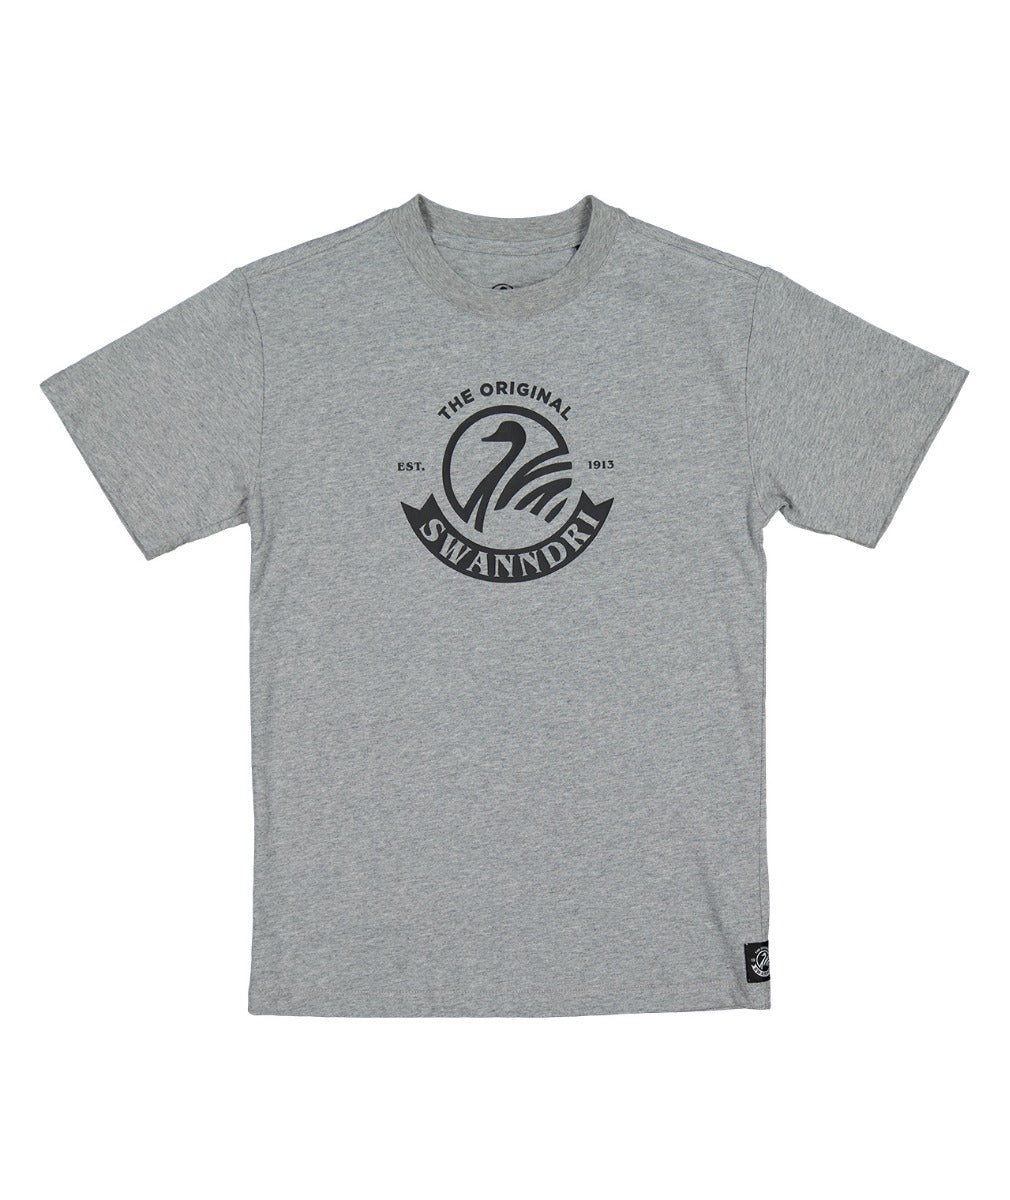 Kids Original V2 T-Shirt | Grey Marle/Black